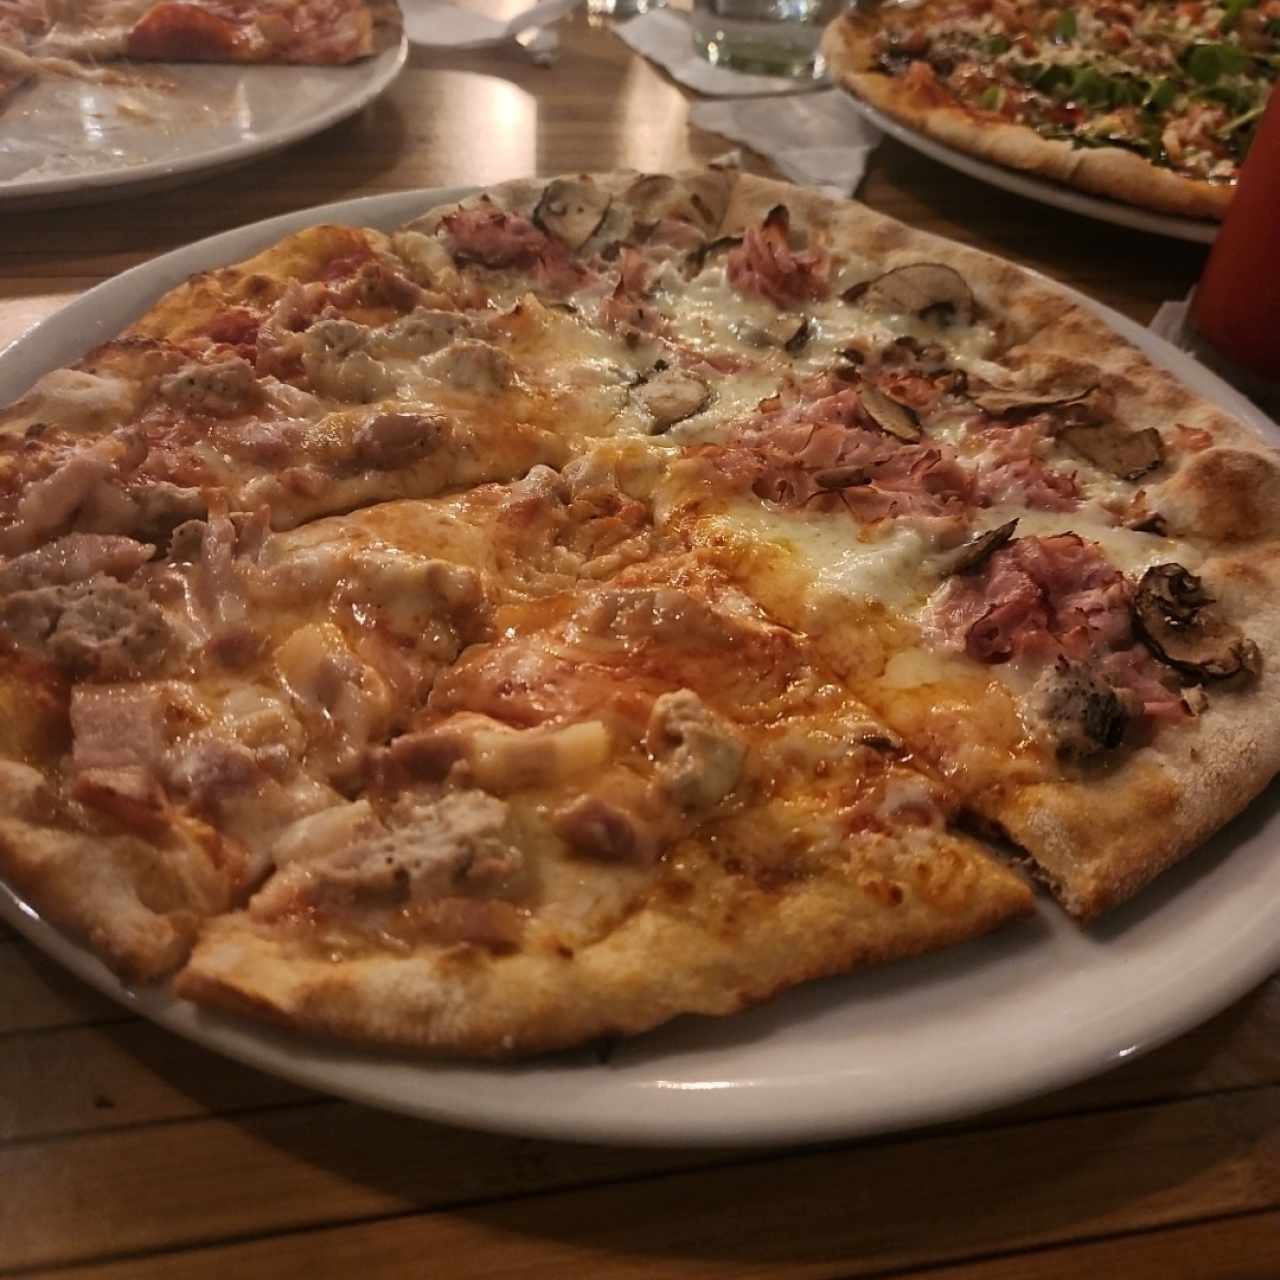 Pizza Giorgio Armani